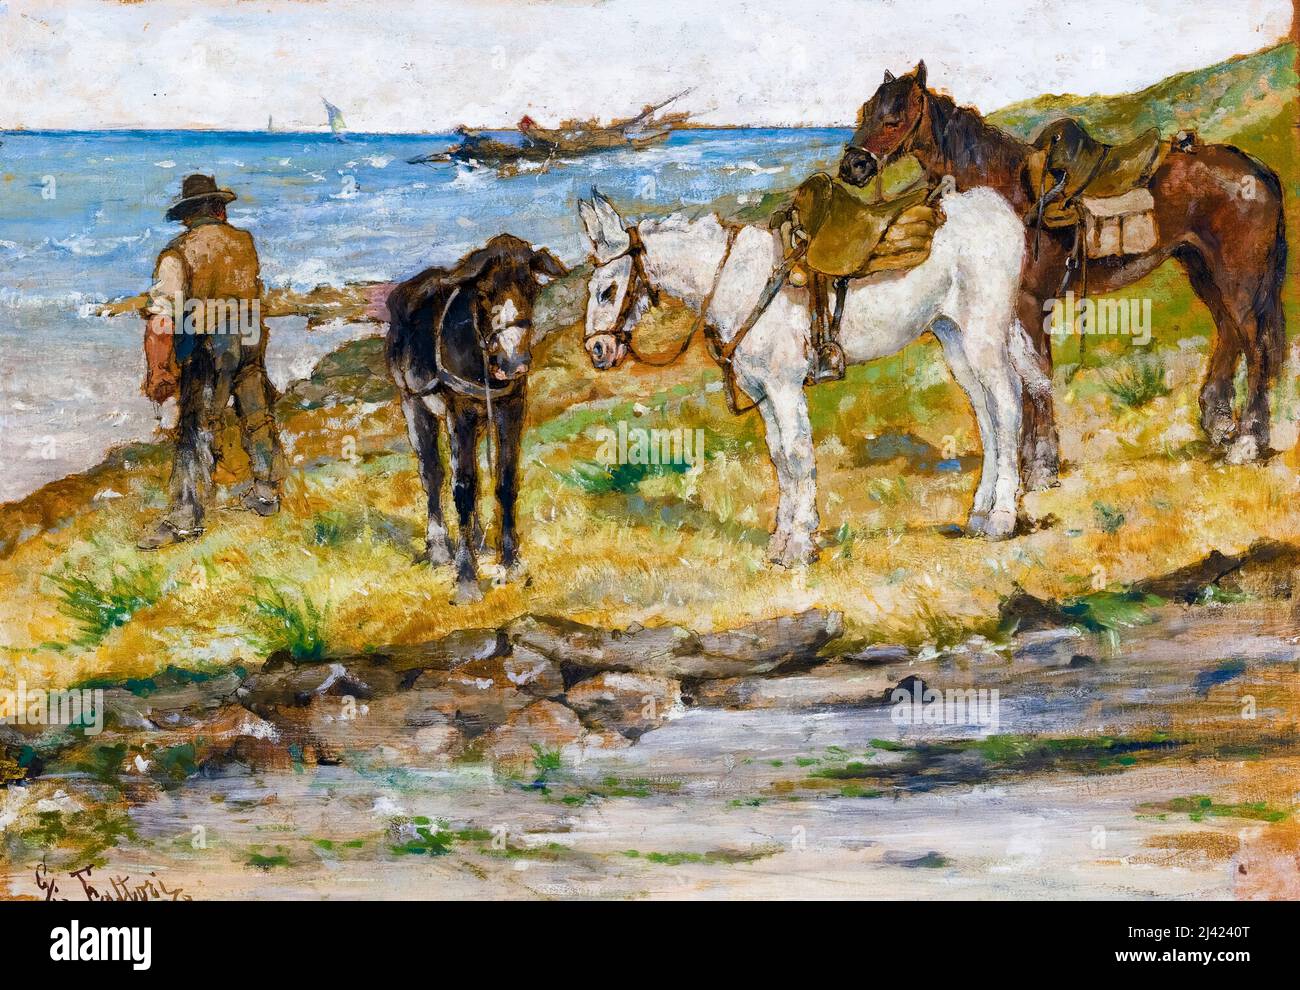 Giovanni Fattori, Paesaggio Con Cavalli, (Landscape With Horses), painting 1899 Stock Photo